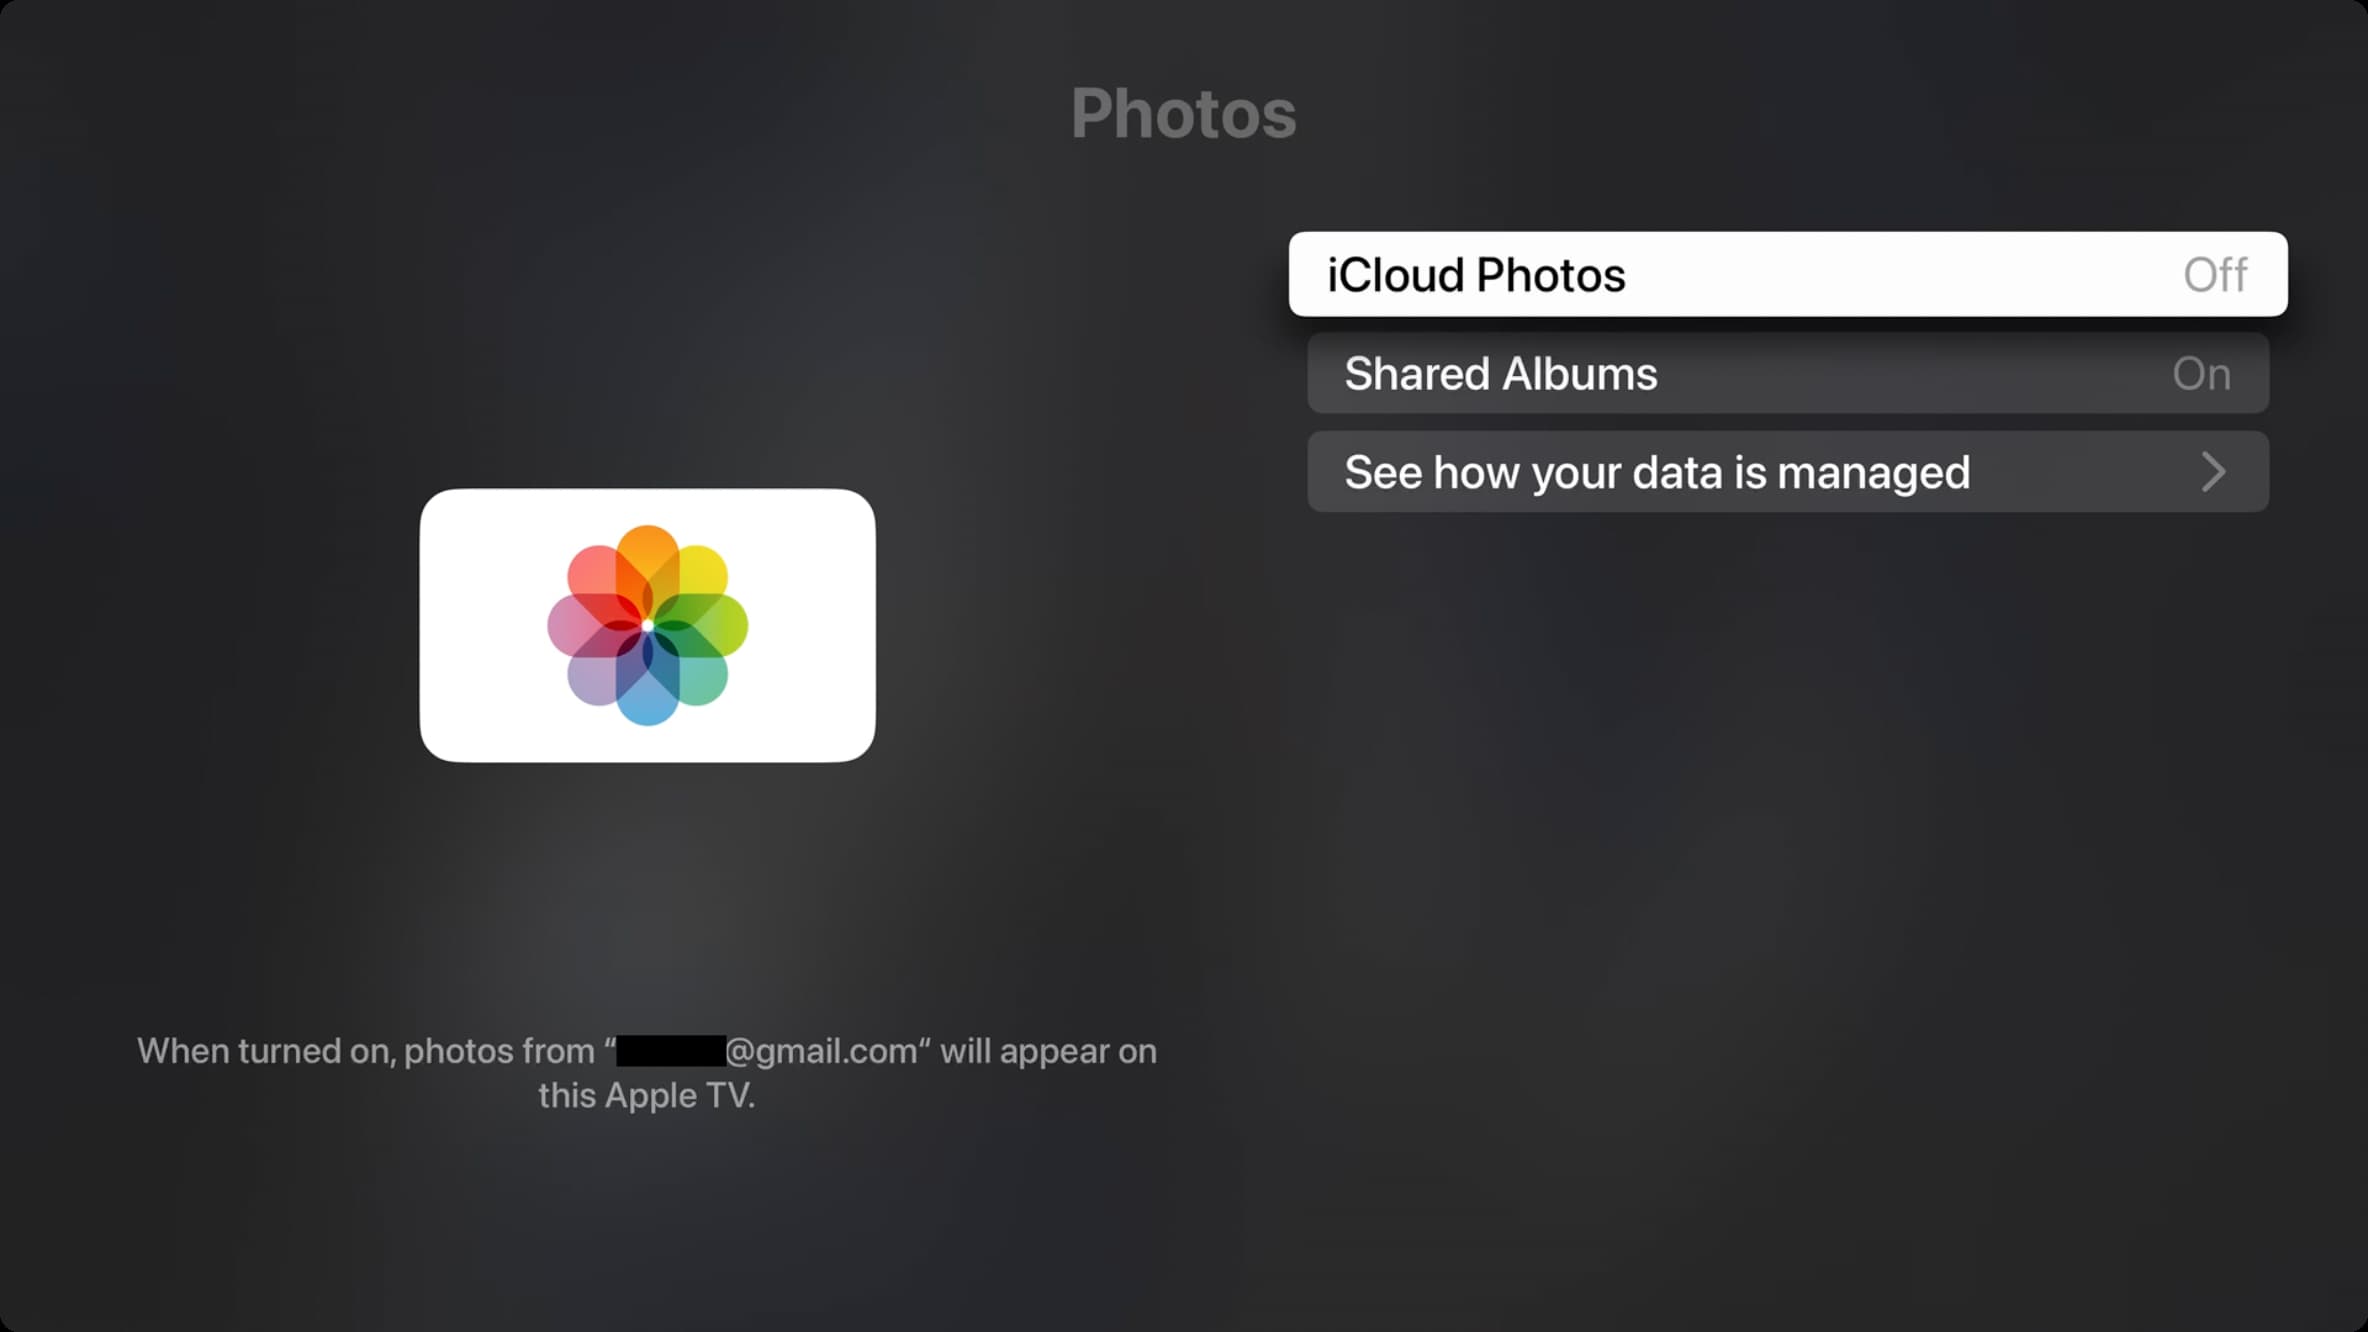 Turn off iCloud Photos on Apple TV